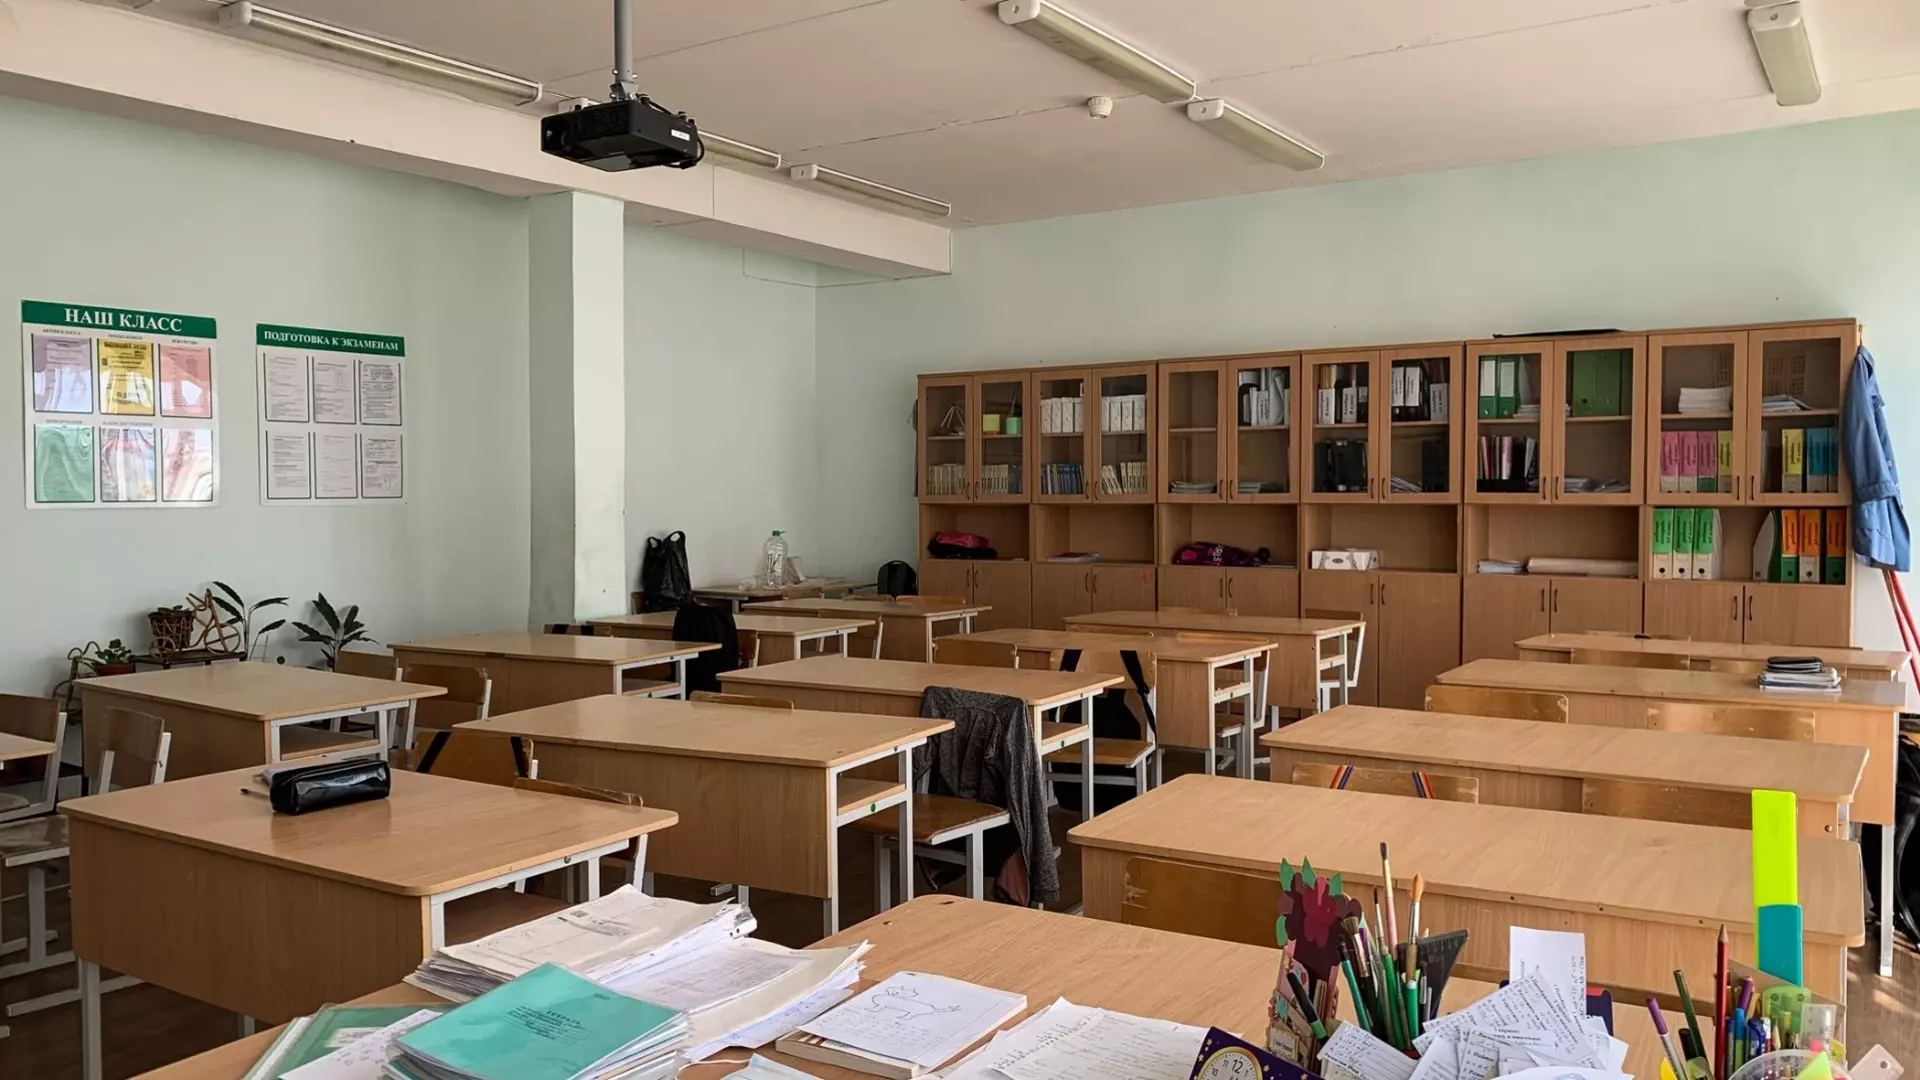 Учителя скандальной школы в ХМАО пожаловались на прессинг со стороны руководства